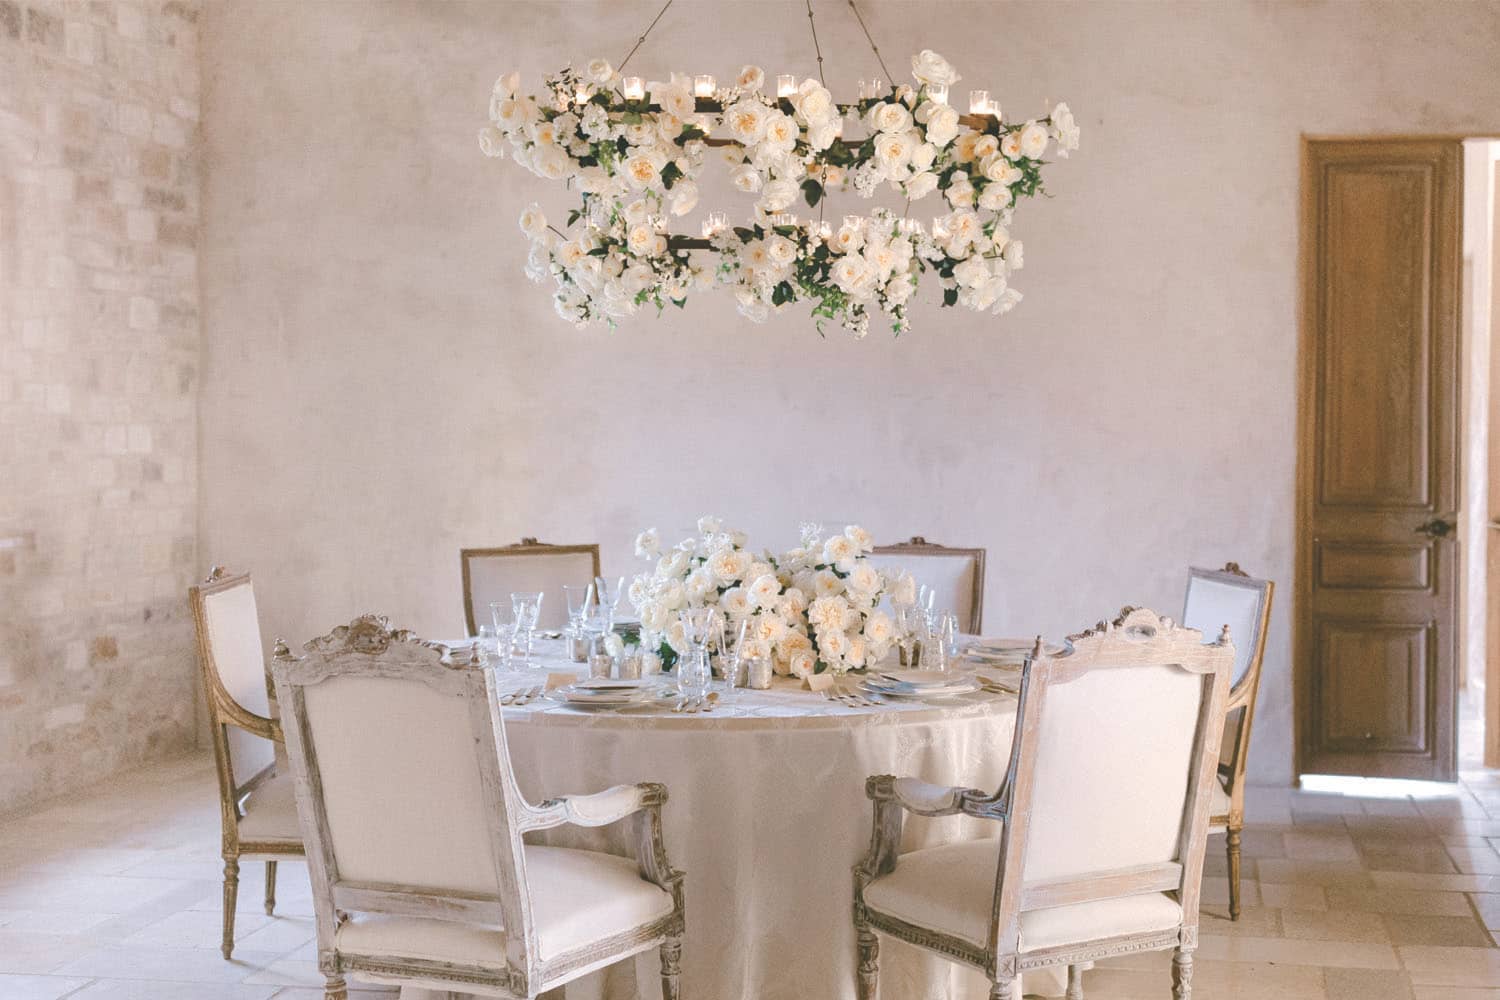 Arrangement de table complet de roses de mariage David Austin